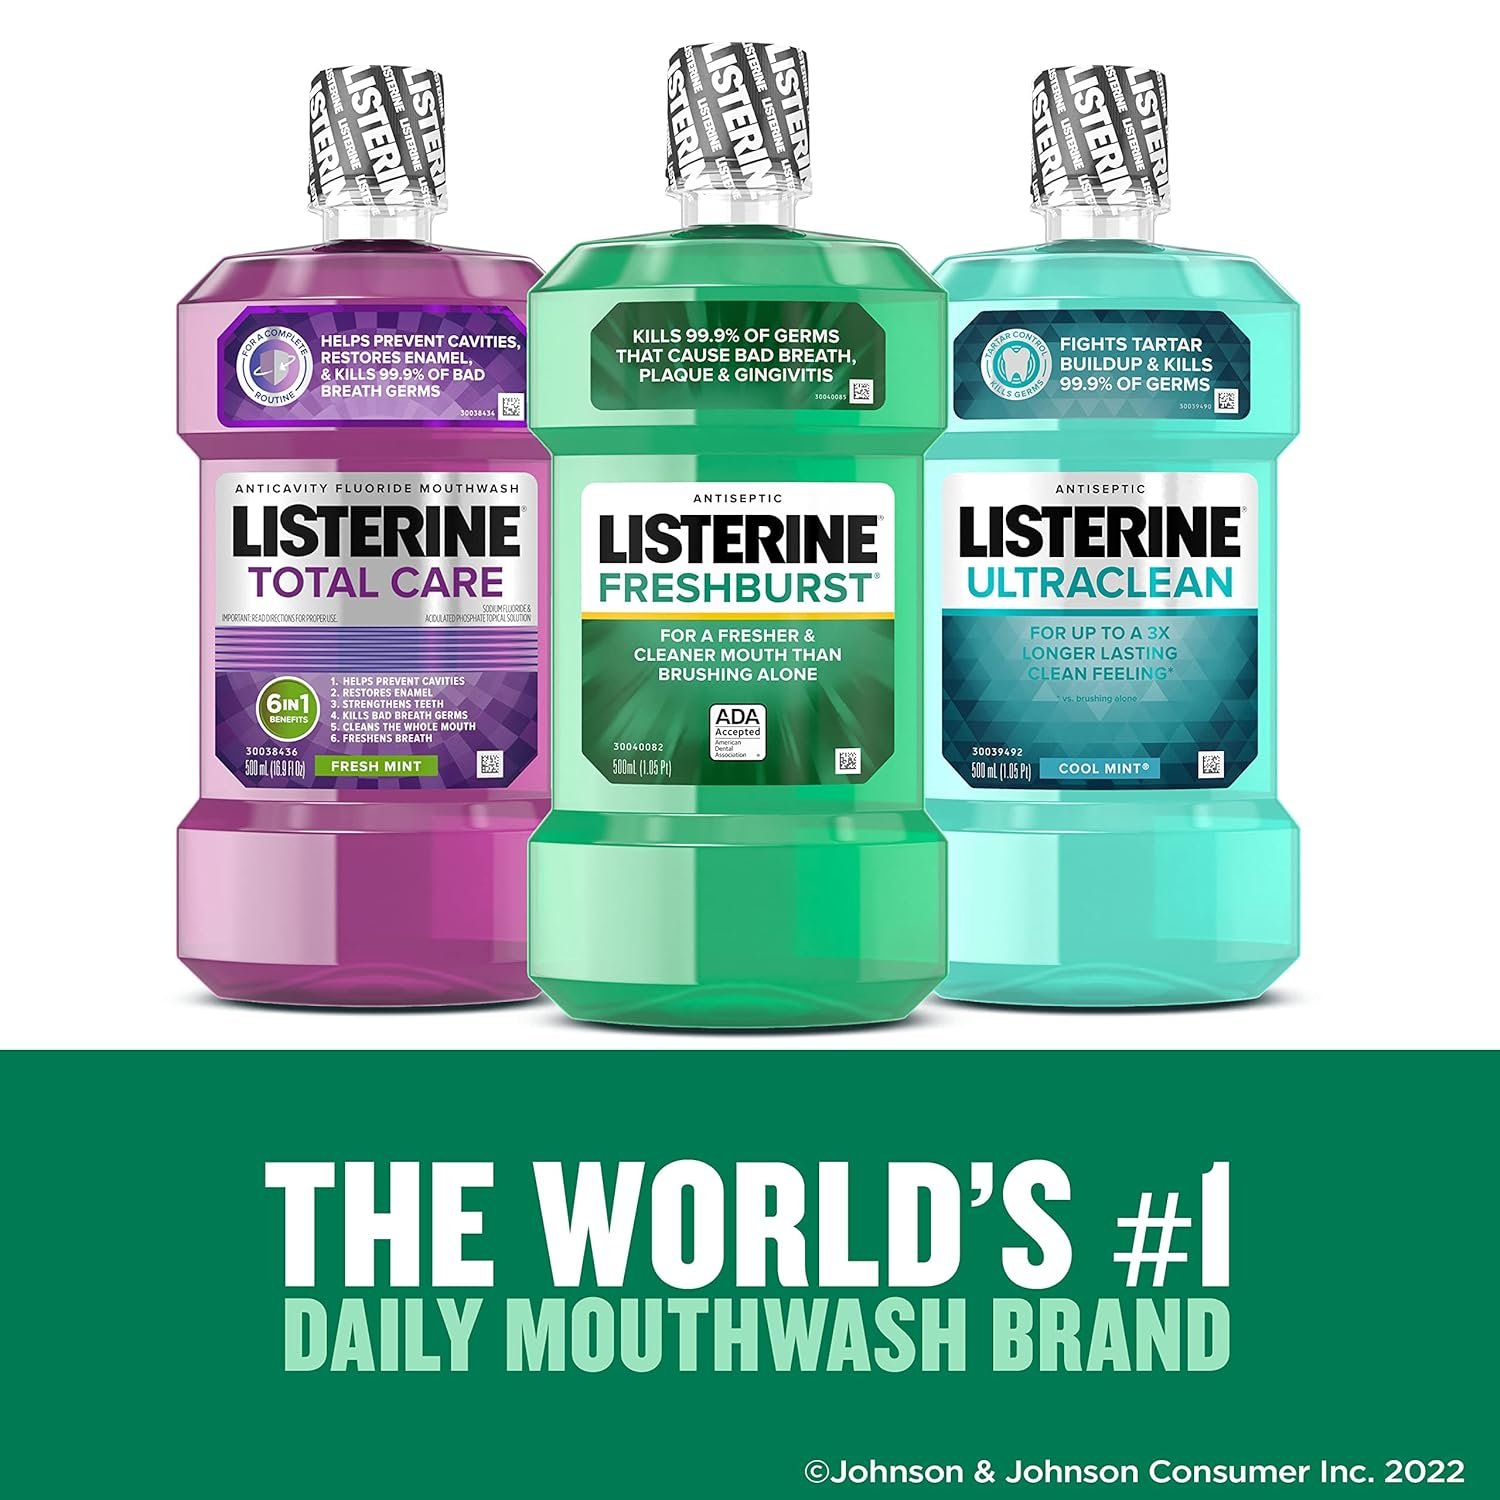 Listerine Freshburst Antiseptic Mouthwash for Bad Breath, 500 mL x 2 - image 5 of 8